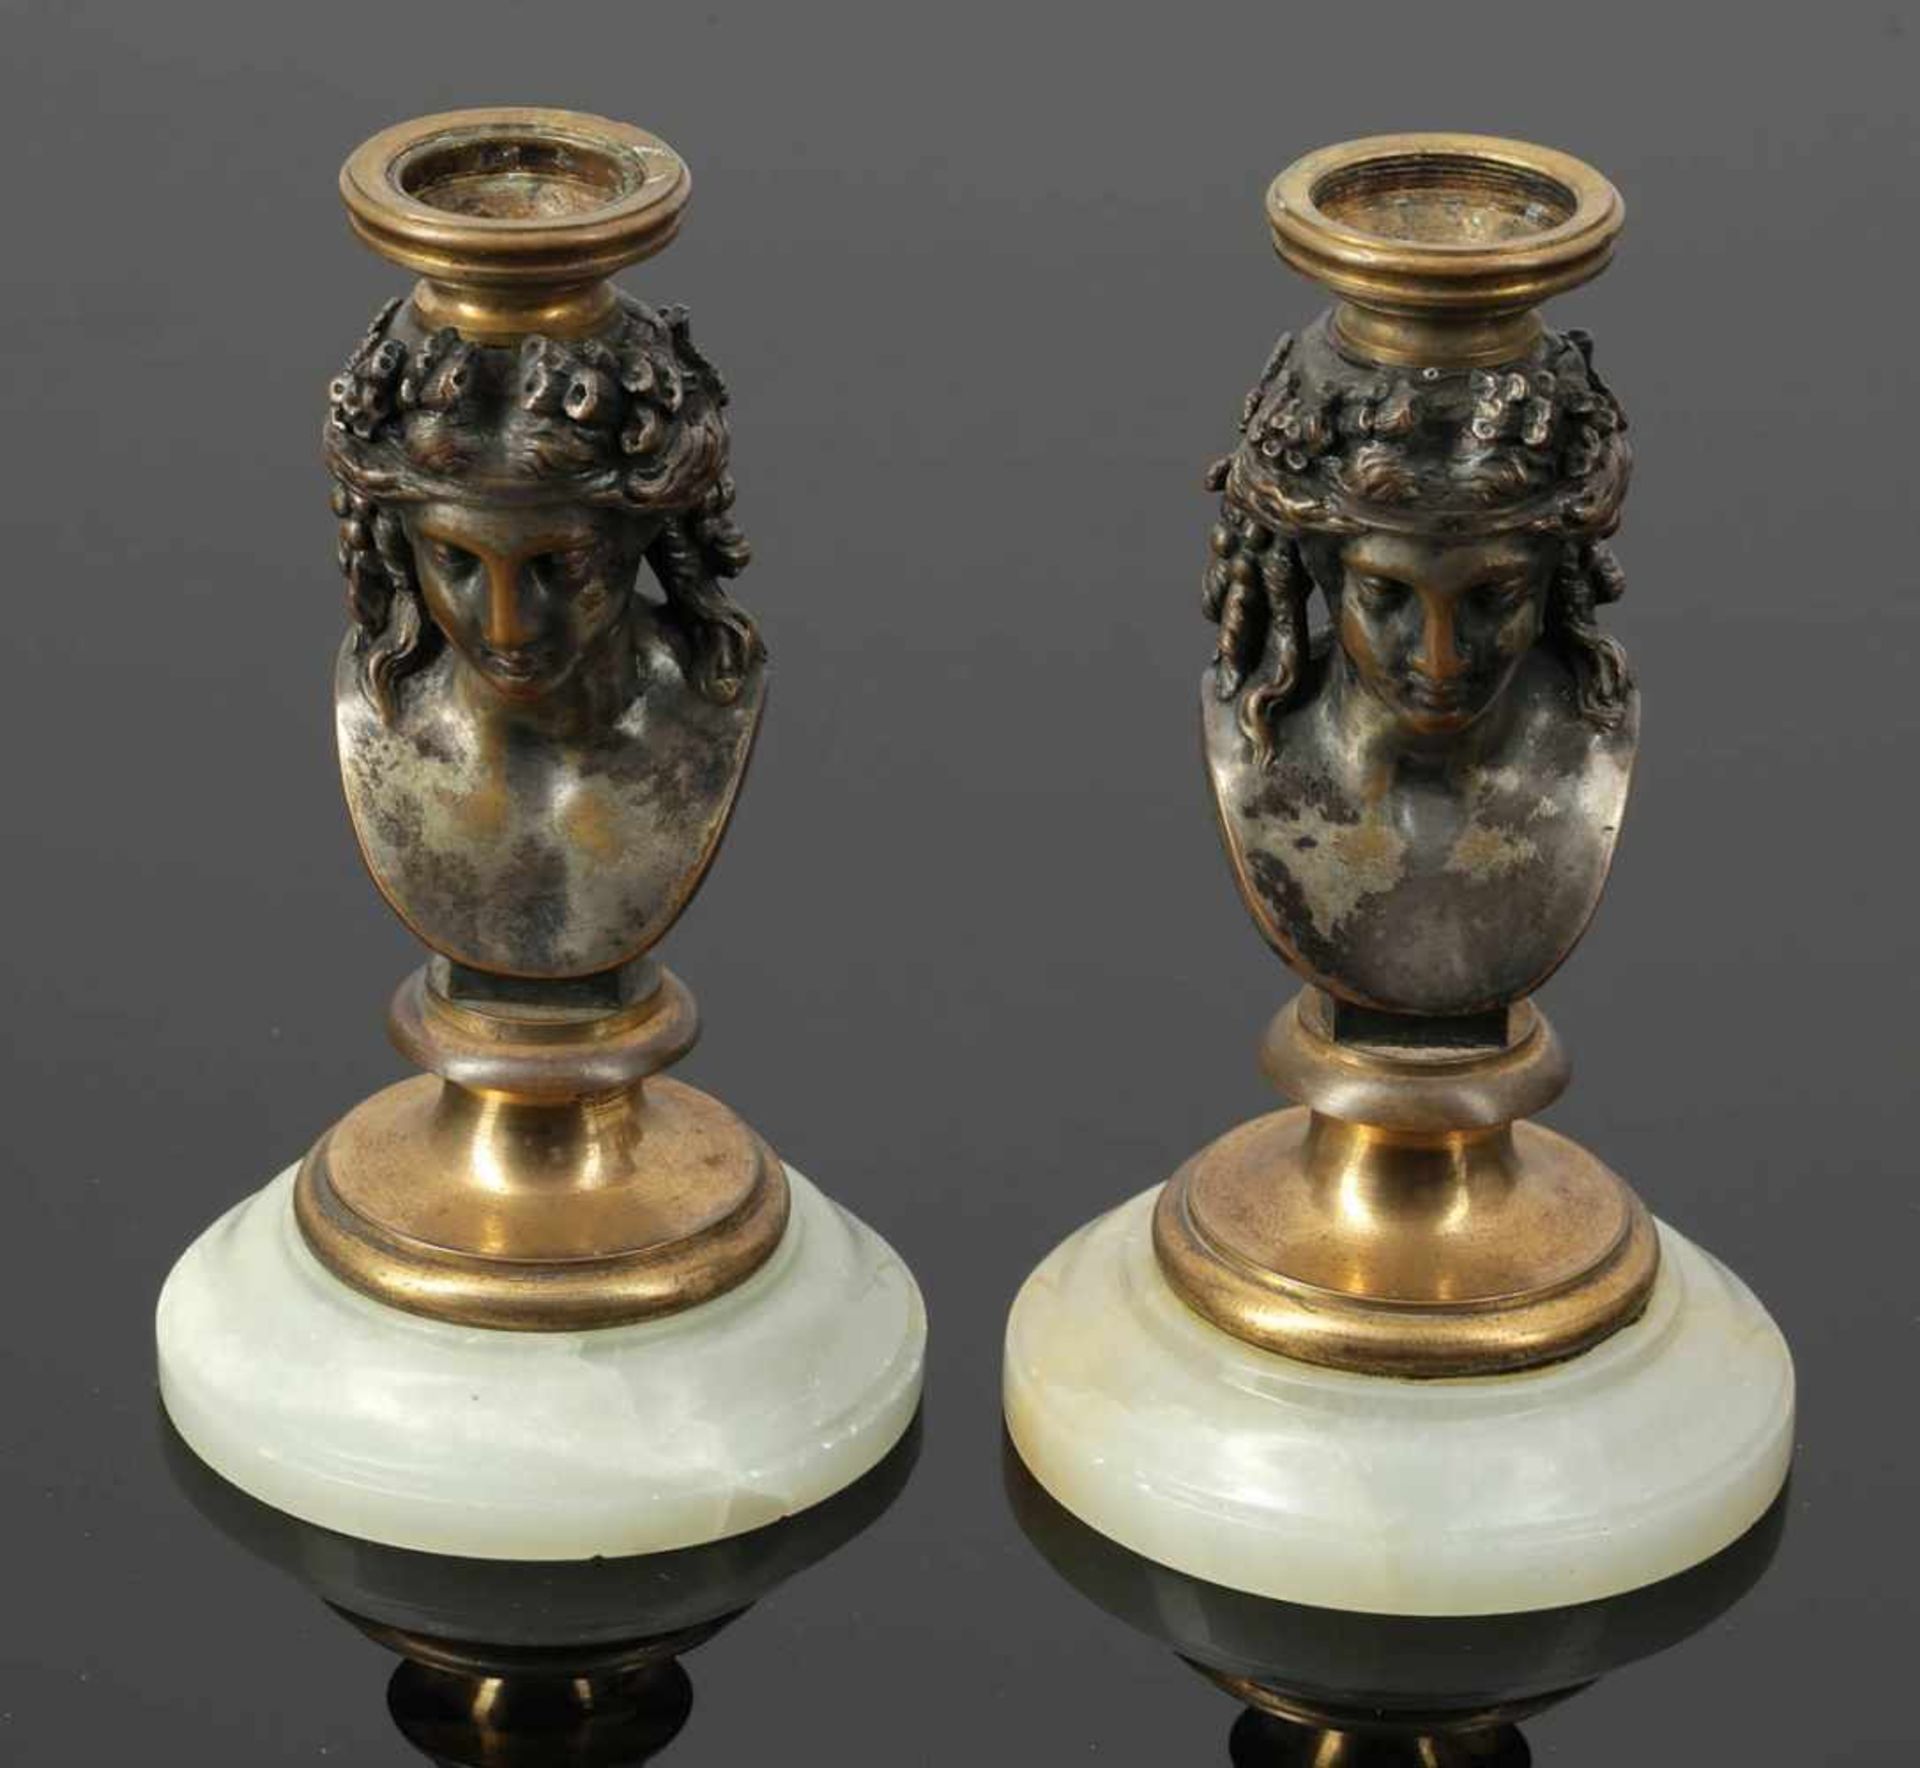 Leuchterpaar Pair of Candleholder 19. Jahrhundert. Messing. Versilbert. Marmorstand. H. 16,5 cm.